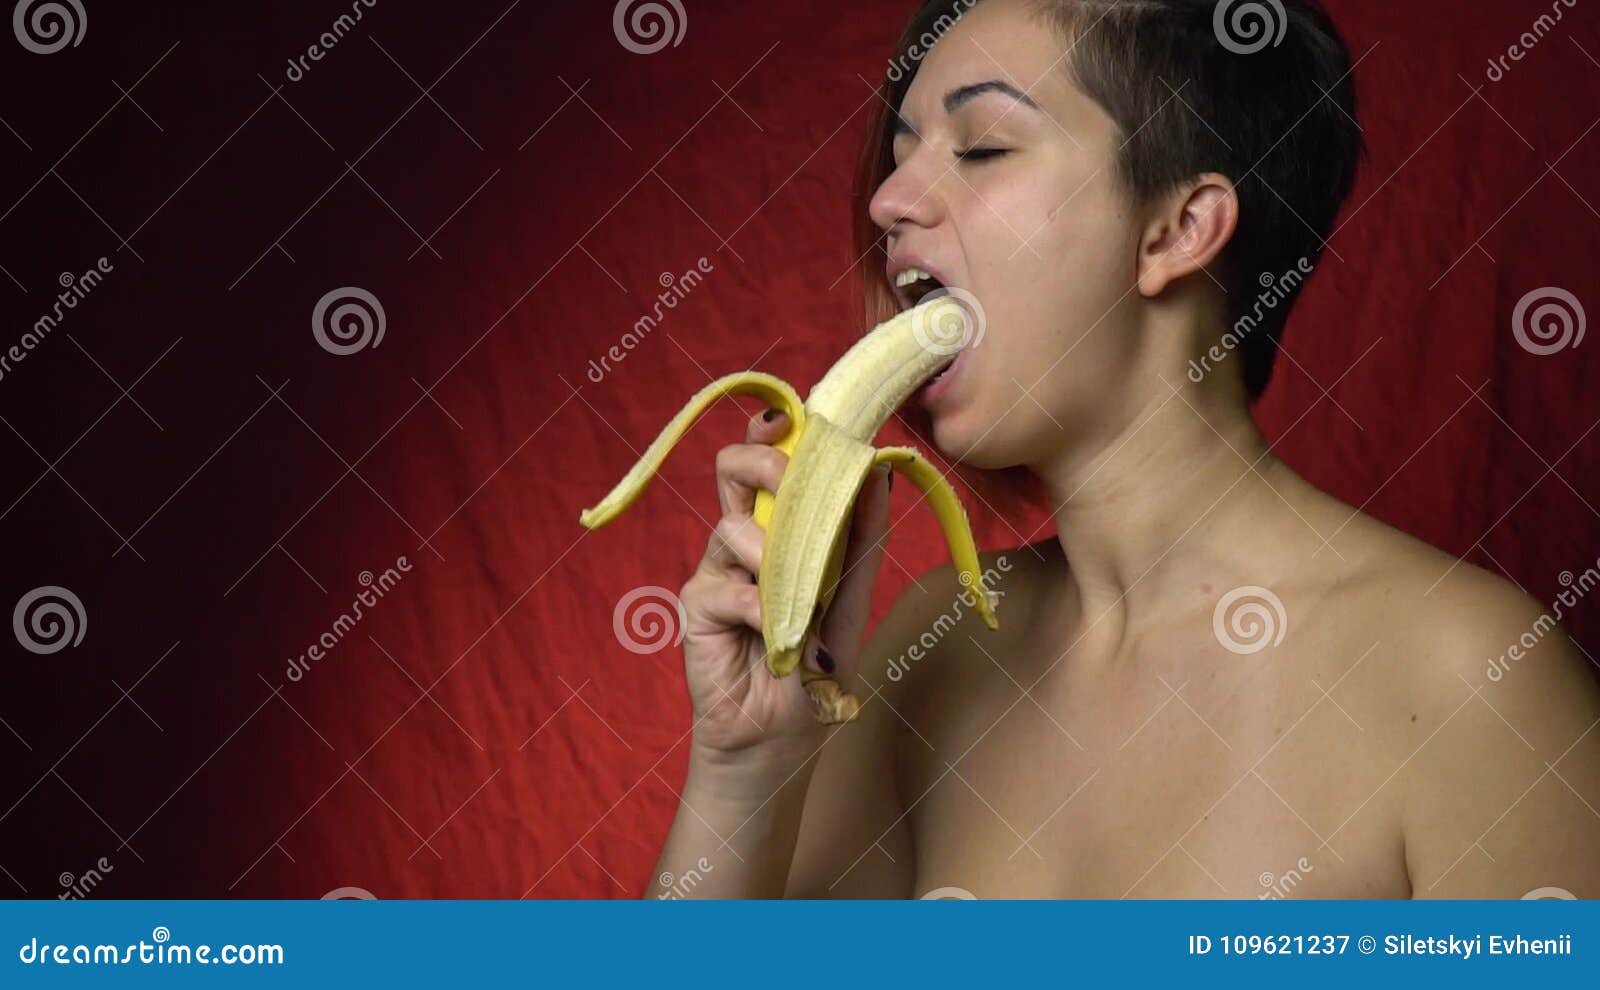 Best of Girl sucking on banana